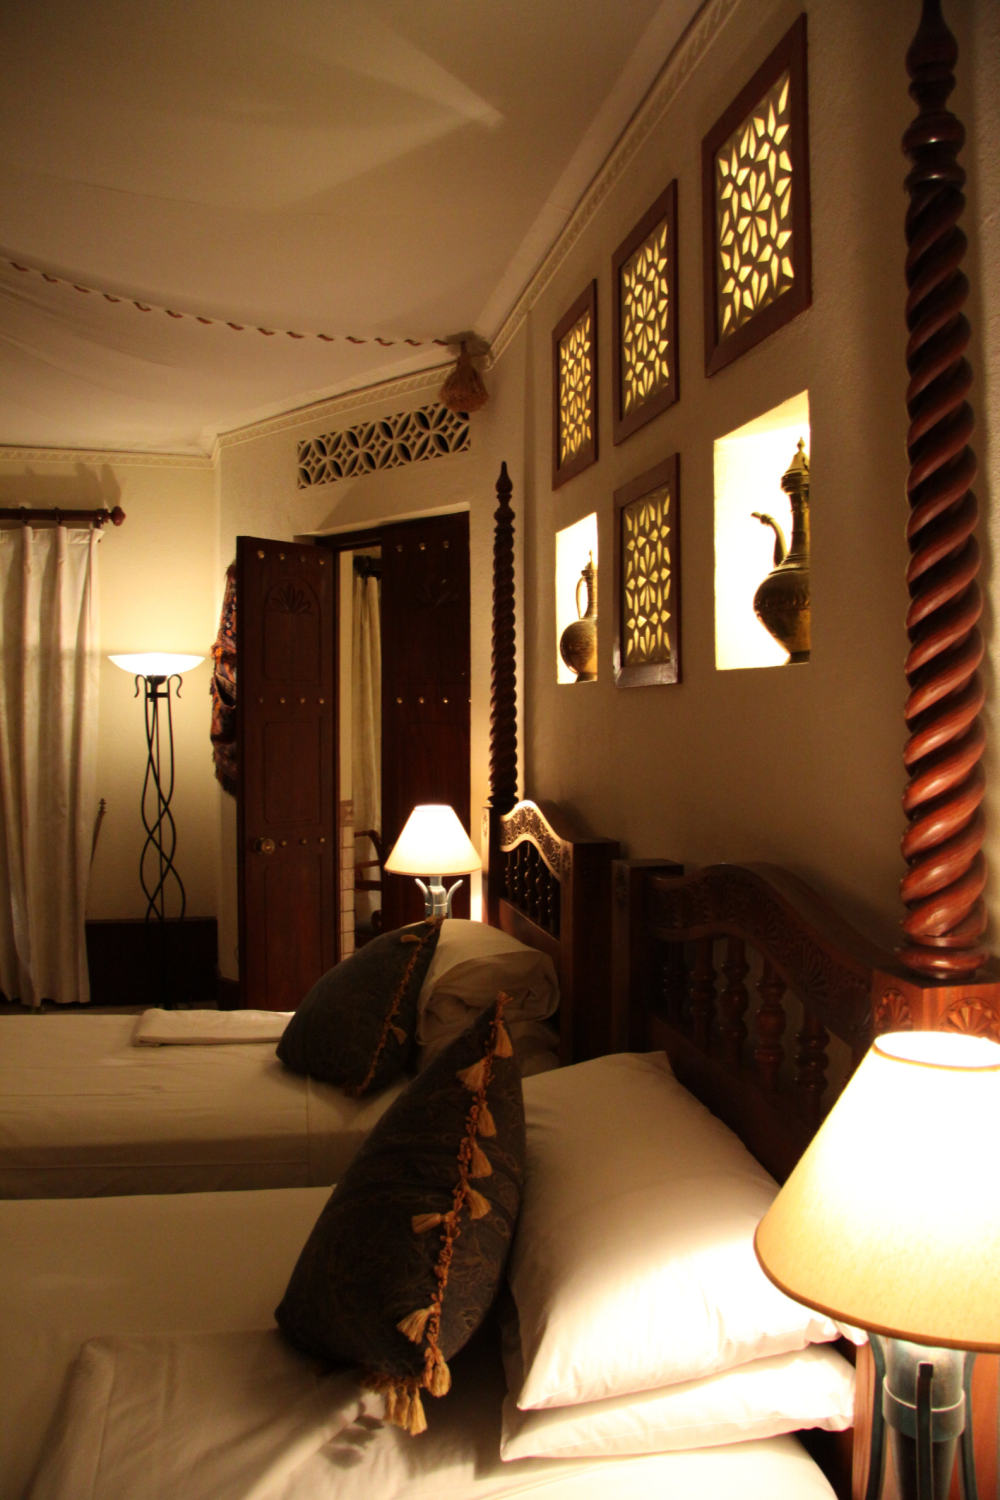 迪拜阿玛哈(AlMaha)沙漠度假酒店Al Maha Desert Resort and Spa, Dubai, United Arab Emirates_IMG_5943.jpg